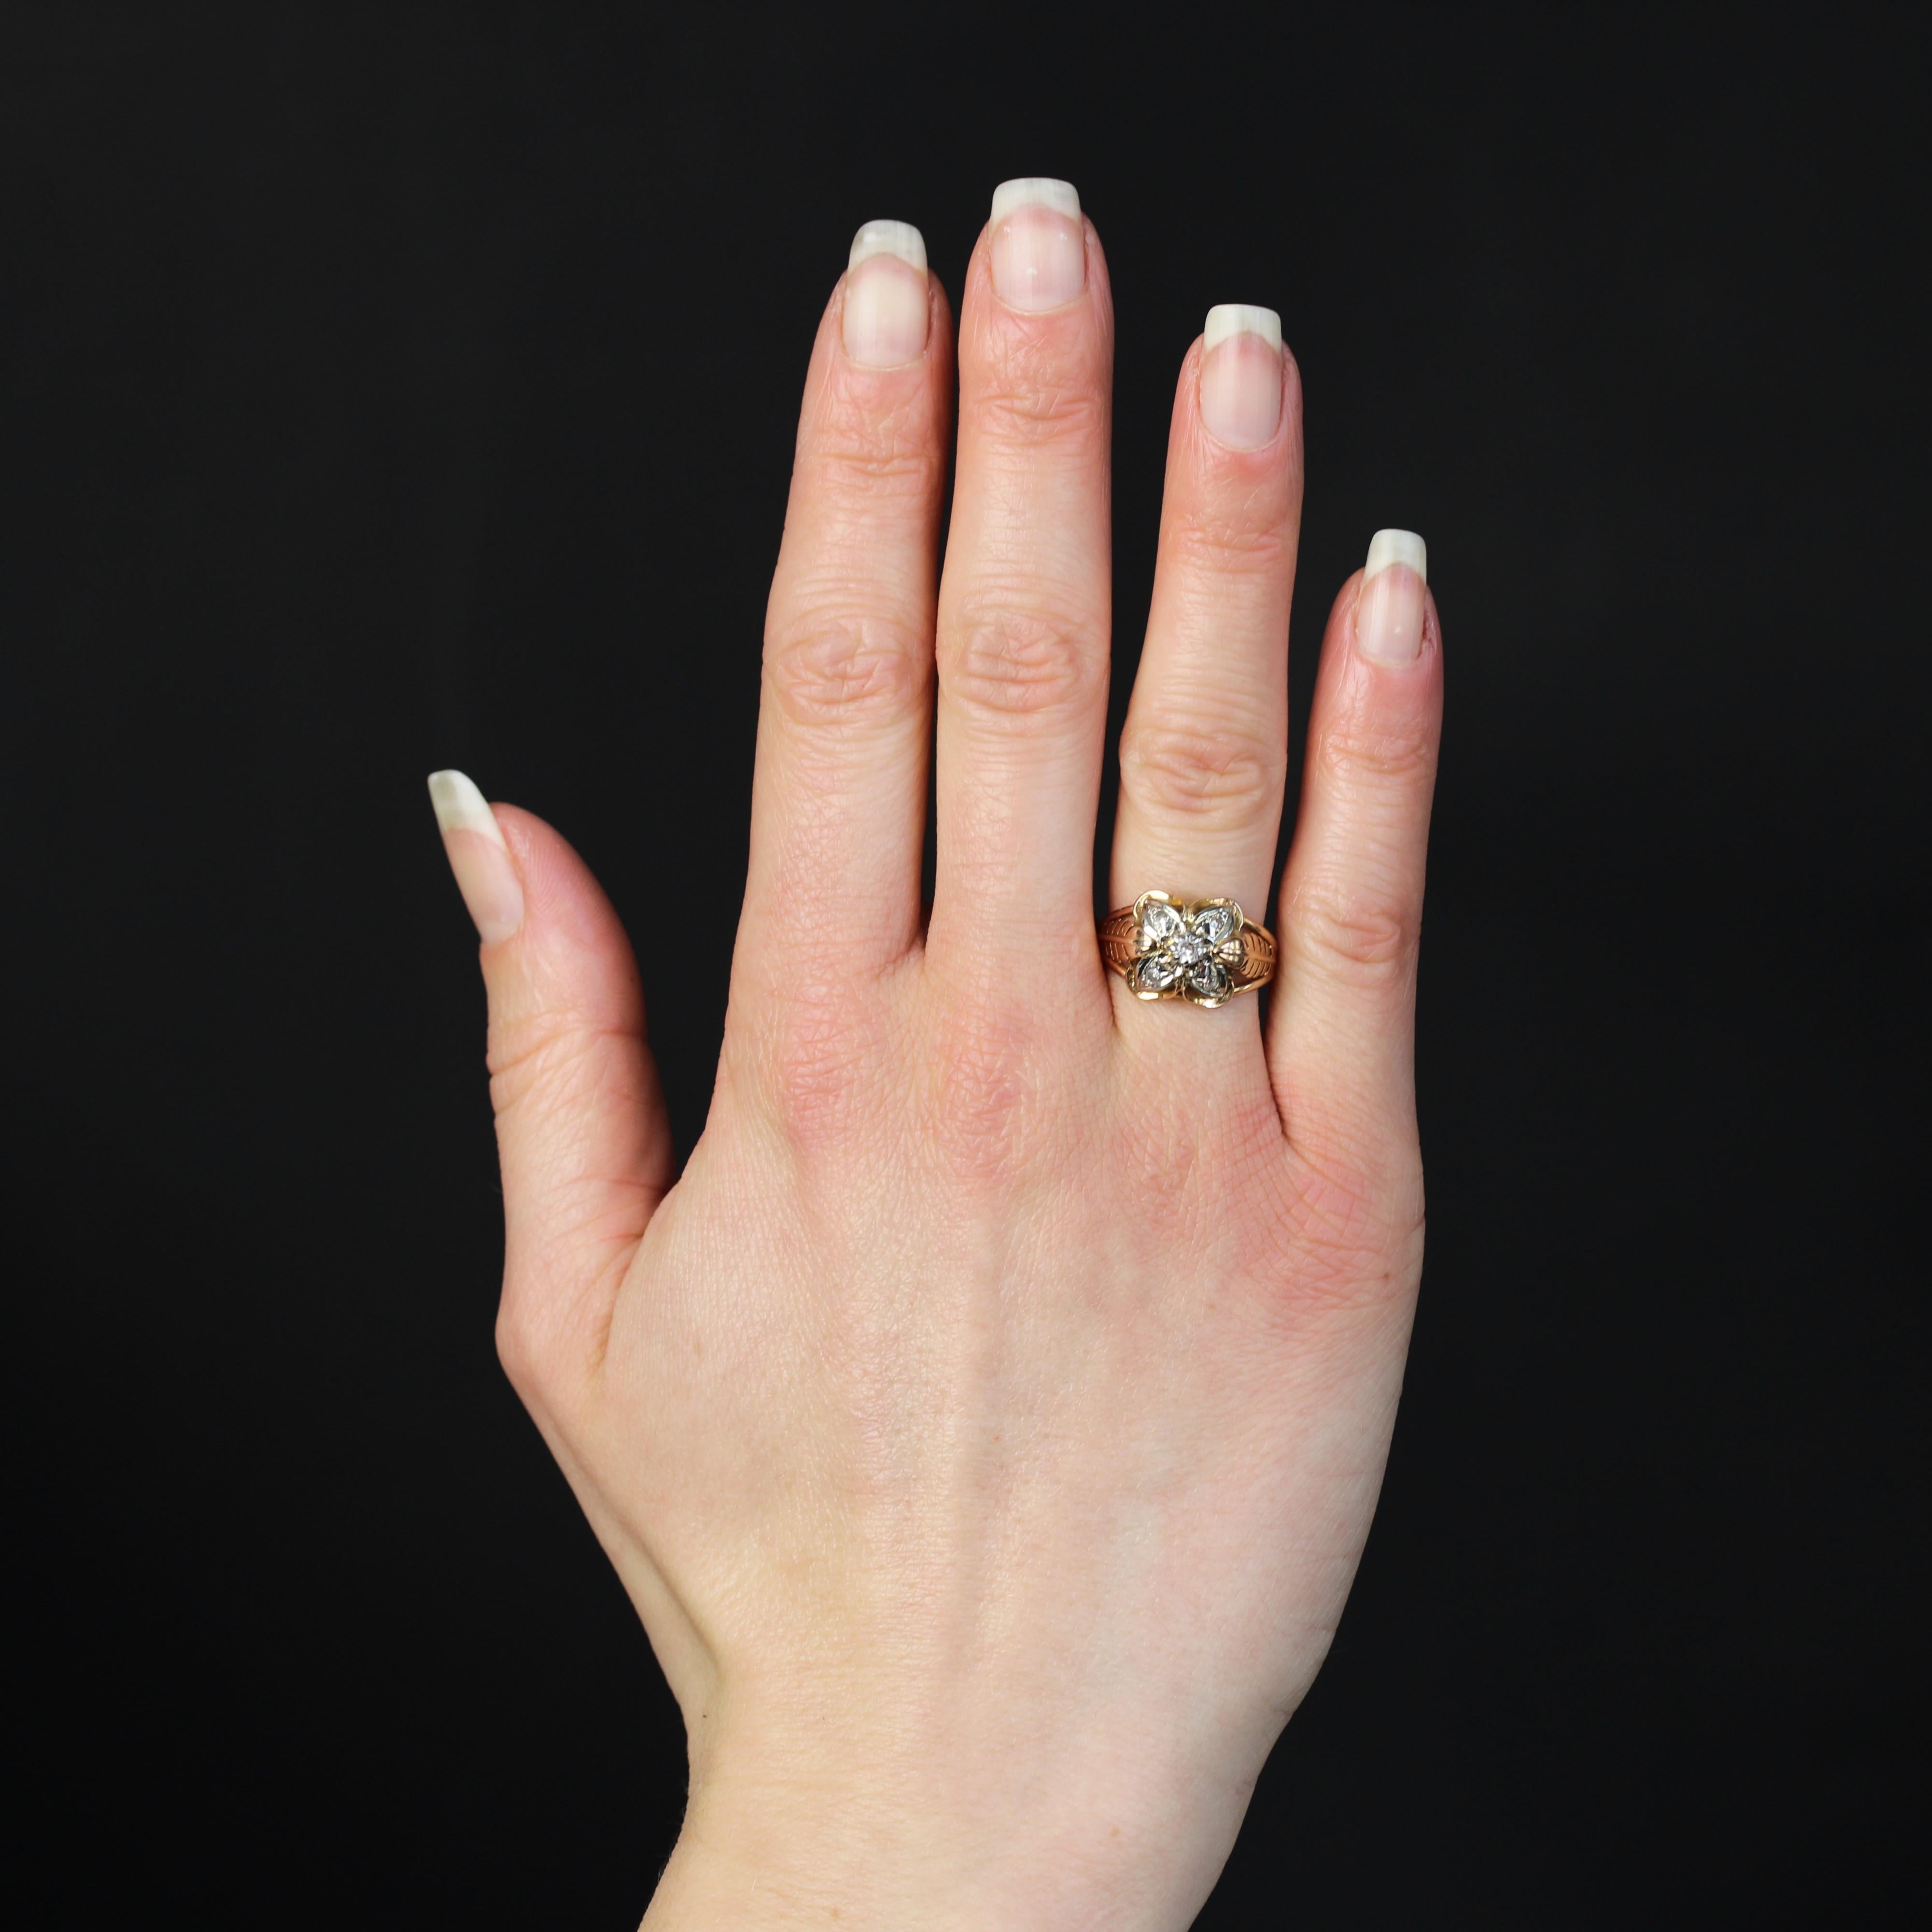 Ring aus 18 Karat Roségold.
Ein entzückender Vintage-Ring, dessen Oberteil ein vierblättriges Kleeblatt formt, dessen Herz und Blütenblätter mit weißen Saphiren geschmückt sind. Auf beiden Seiten des Kopfes ist der Anfang des Rings mit einer